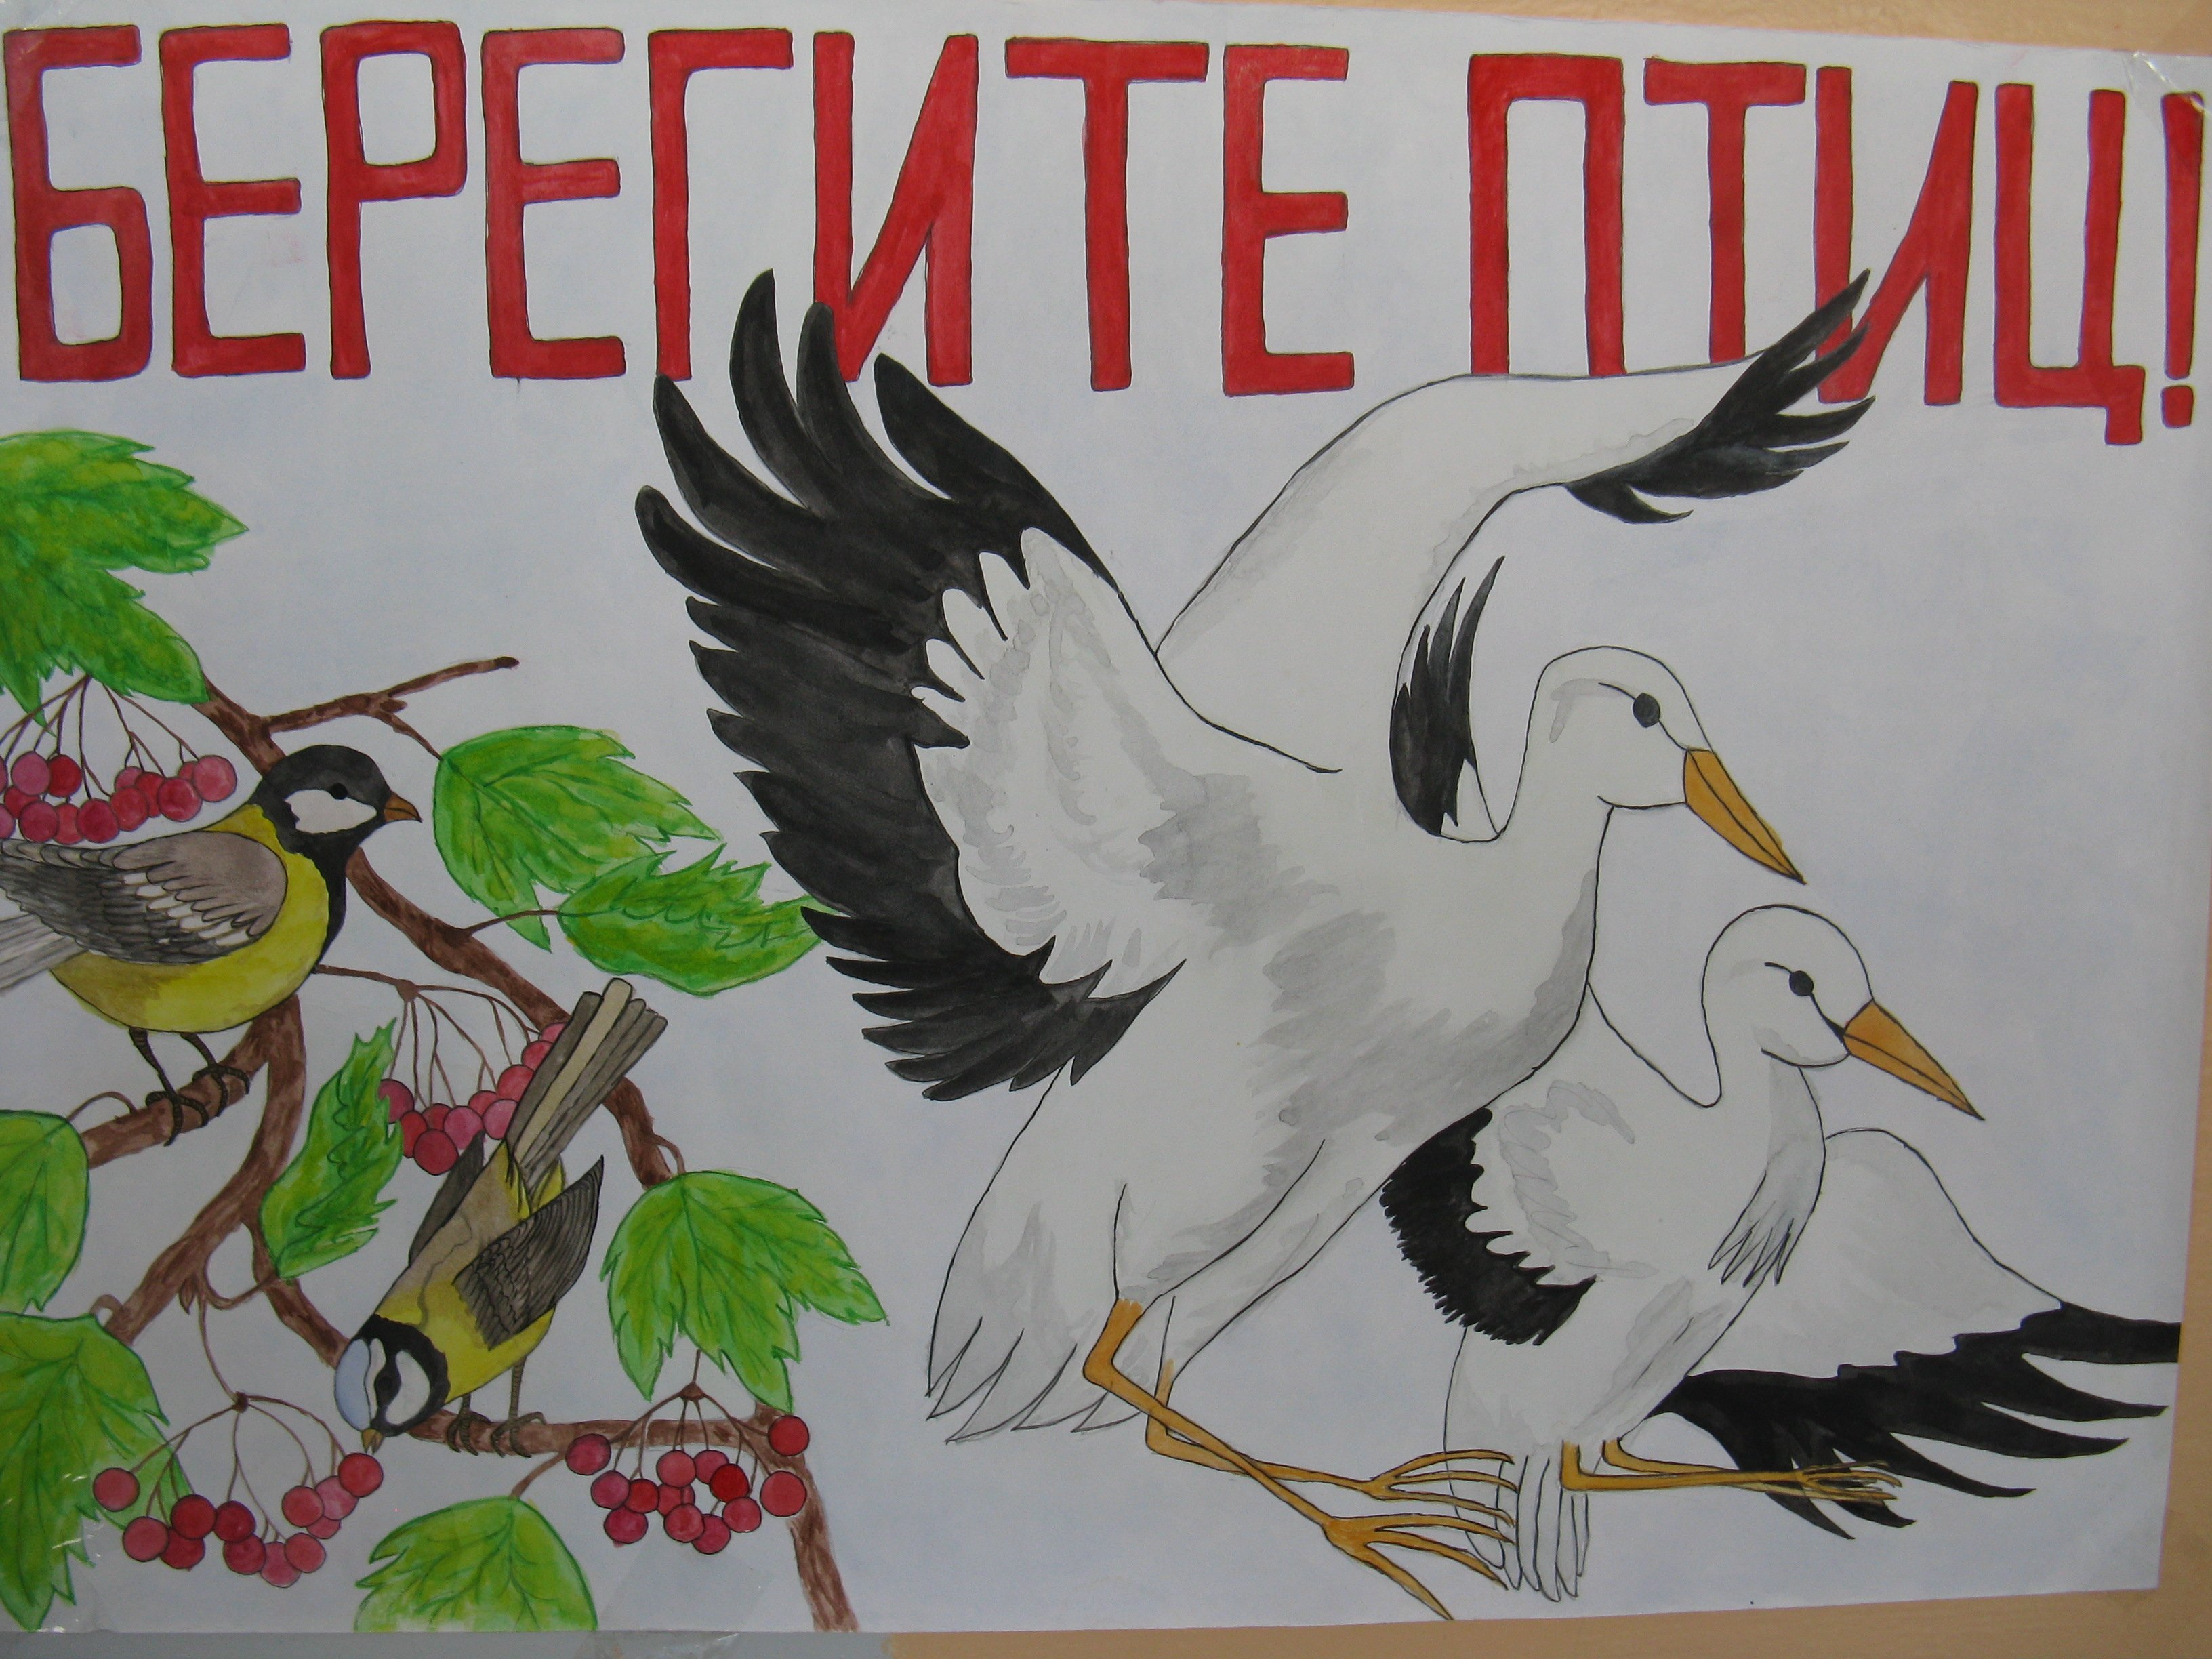 Рисунок берегите птиц. Газета ко Дню птиц. Плакат на день птиц. Международный день птиц рисунок. Картина на день птиц.